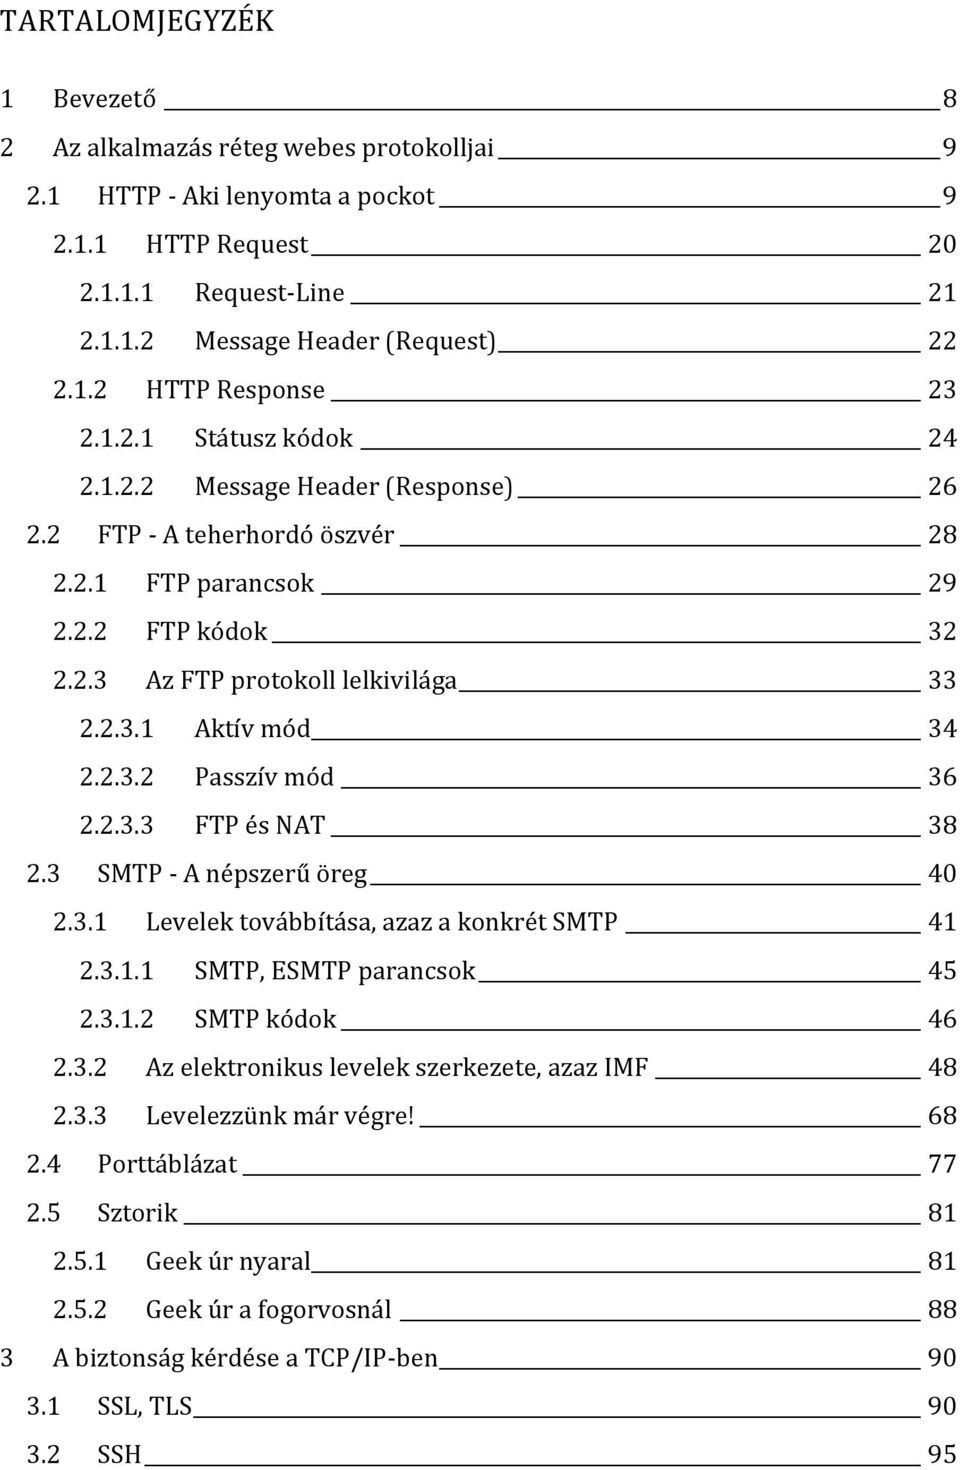 2.3.3 FTP és NAT 38 2.3 SMTP - A népszerű öreg 40 2.3.1 Levelek továbbítása, azaz a konkrét SMTP 41 2.3.1.1 SMTP, ESMTP parancsok 45 2.3.1.2 SMTP kódok 46 2.3.2 Az elektronikus levelek szerkezete, azaz IMF 48 2.